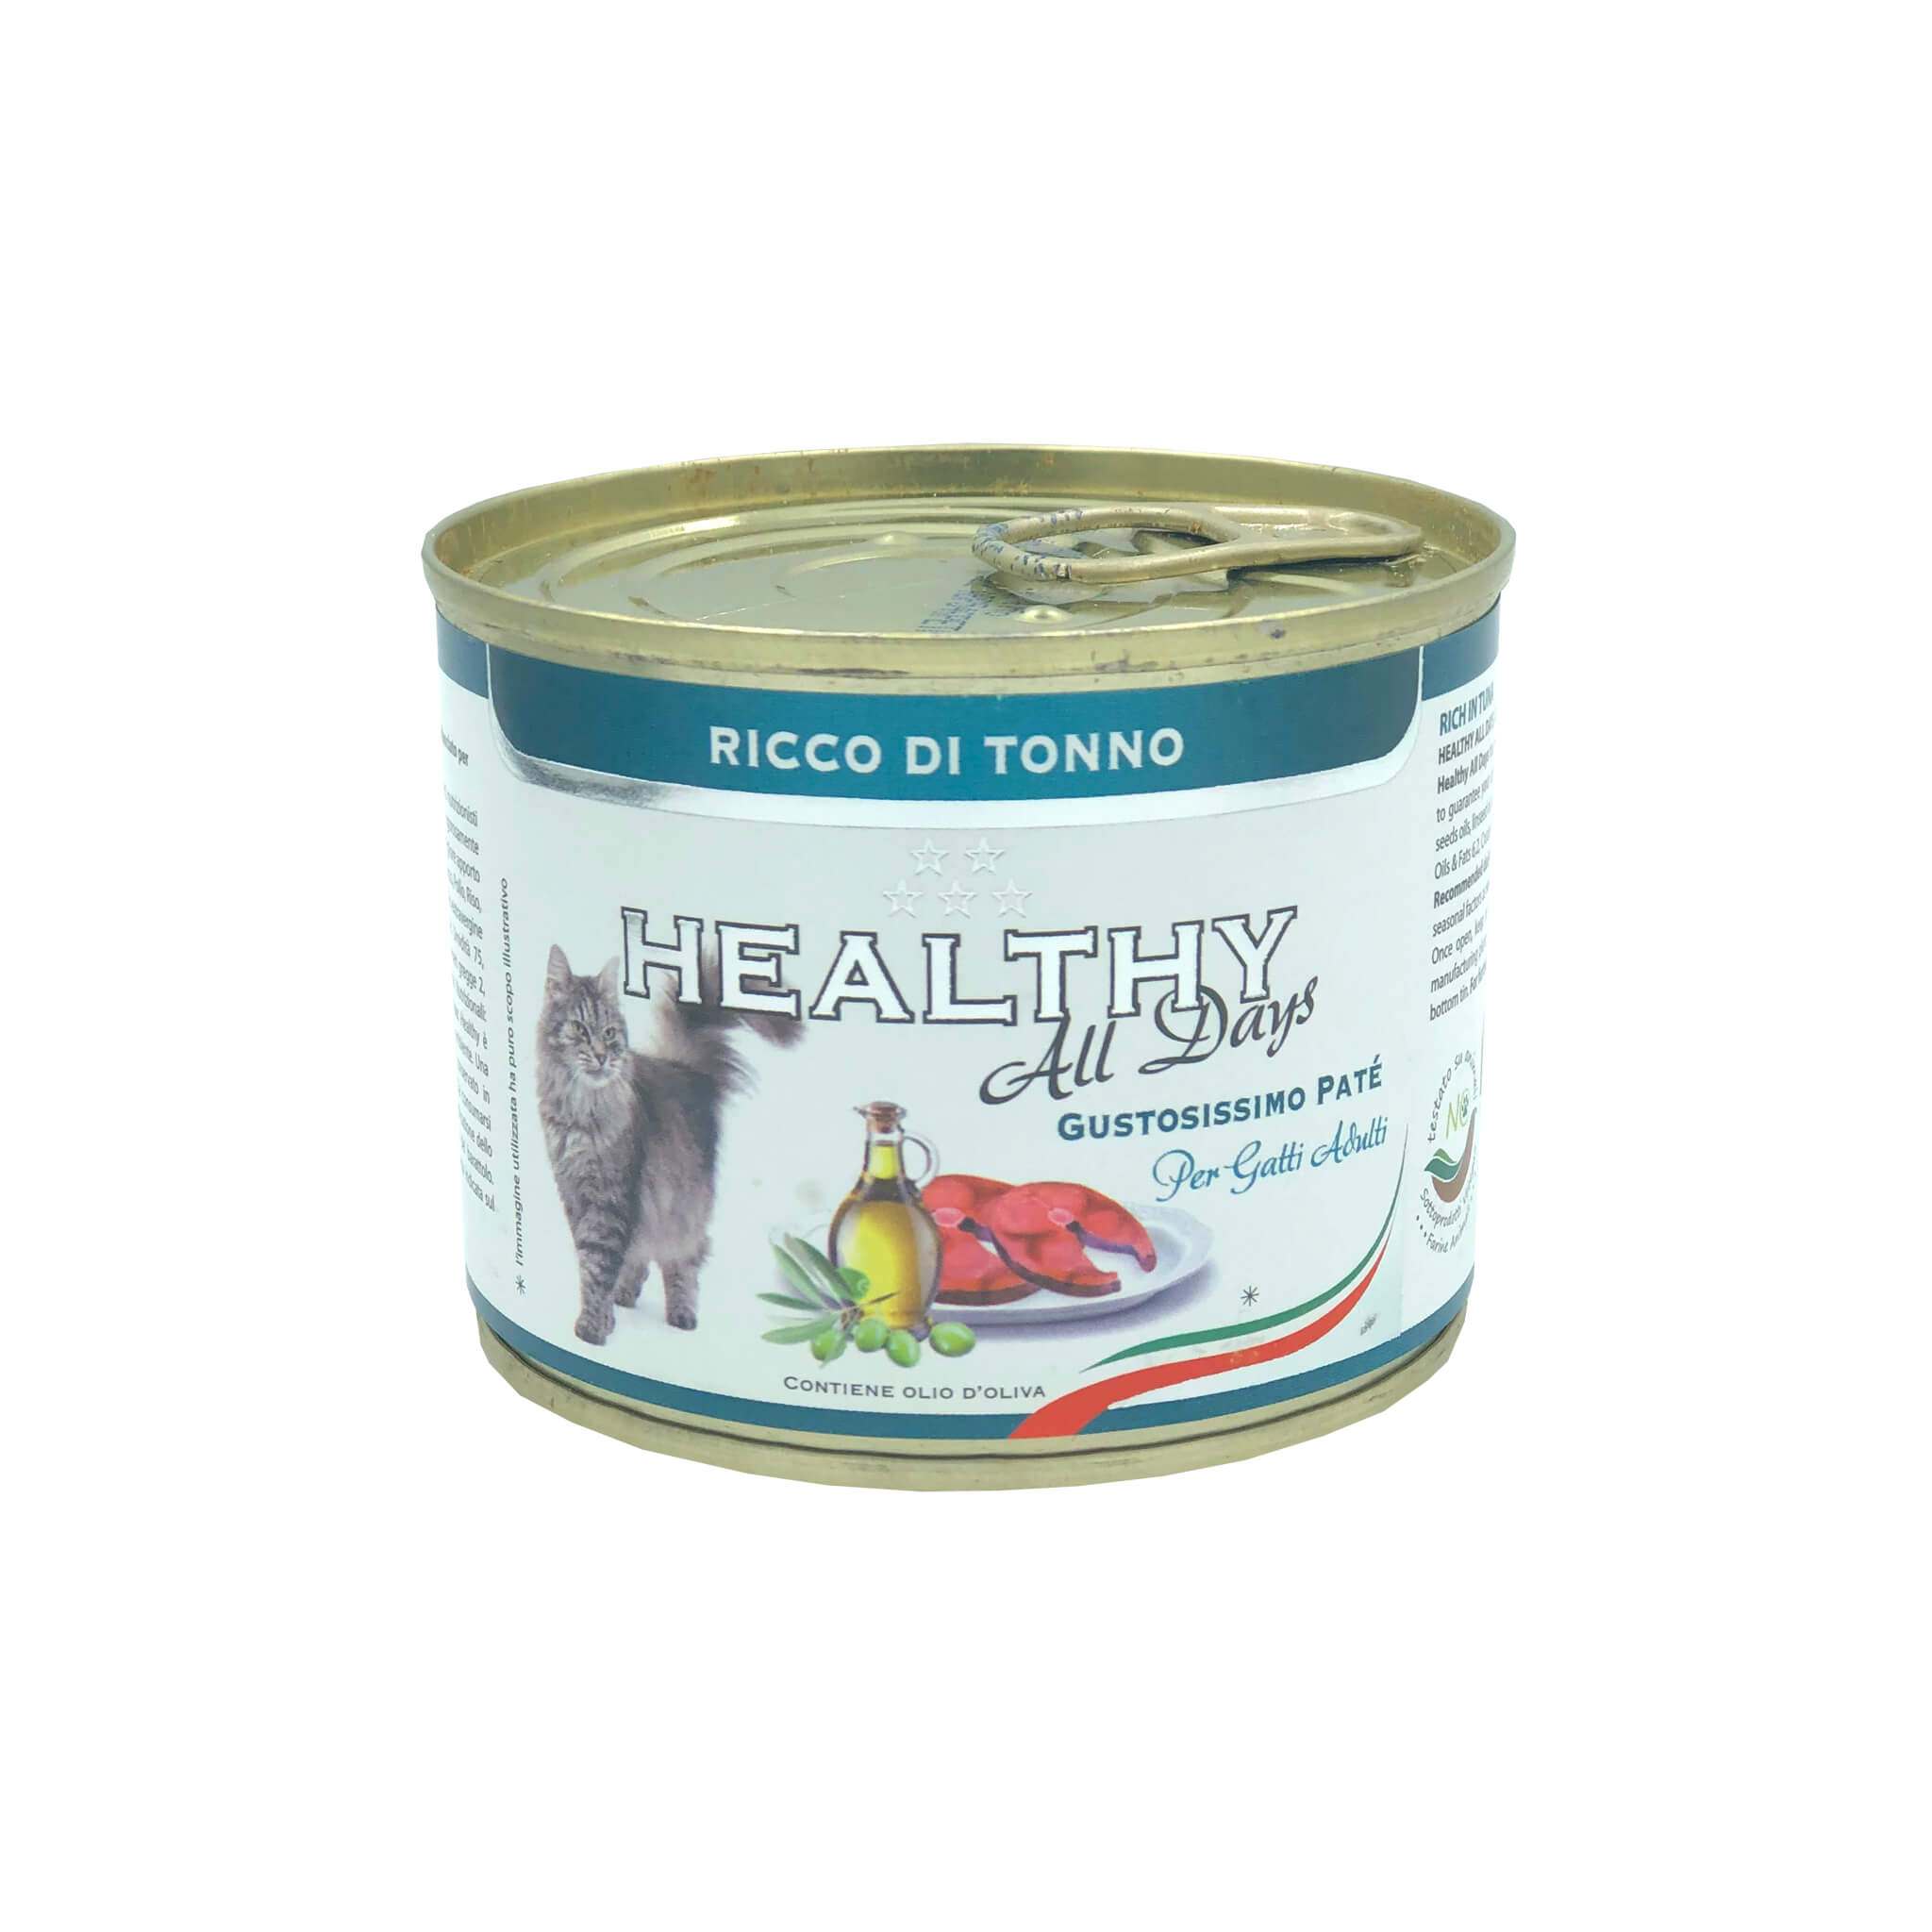 Влажный корм для котов Healthy All Days, с тунцом, 200 г - фото 1